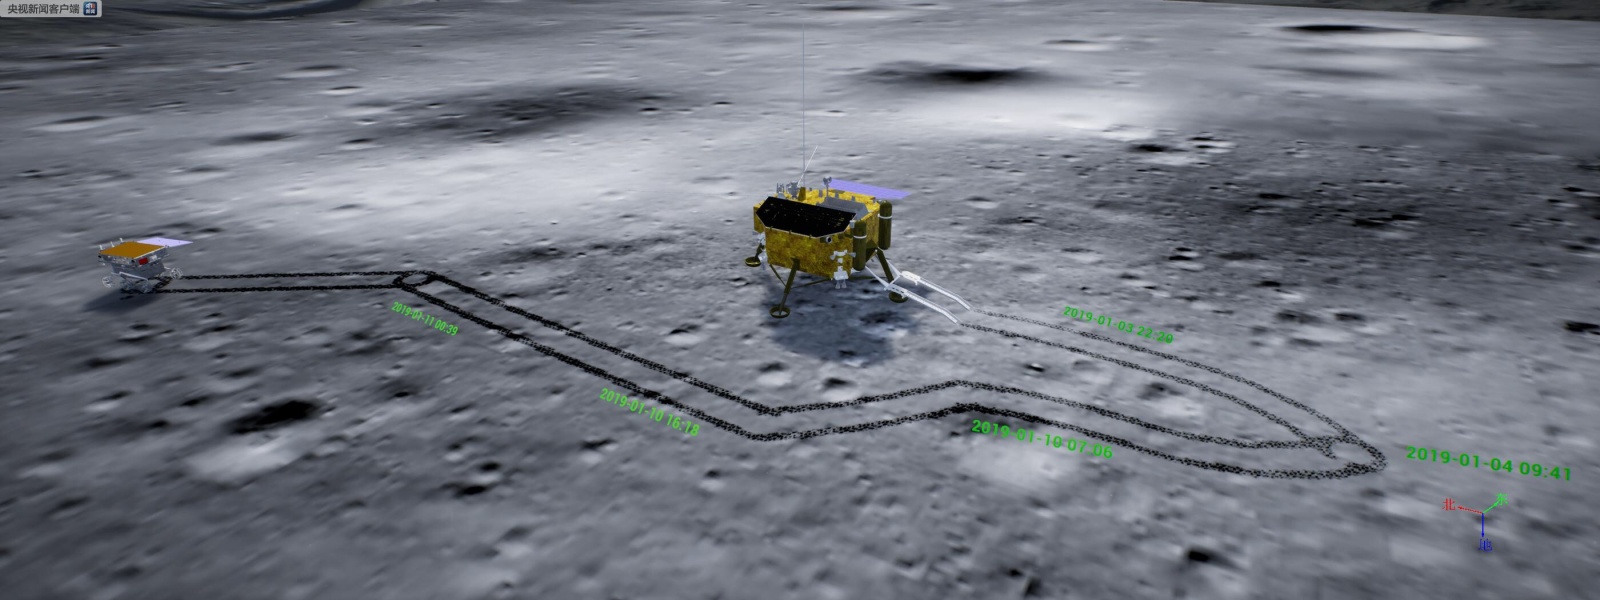 Видео процесса спуска ровера «Юйту-2», его первые метры по поверхности Луны. Двухнедельный сон на Луне закончен - 2